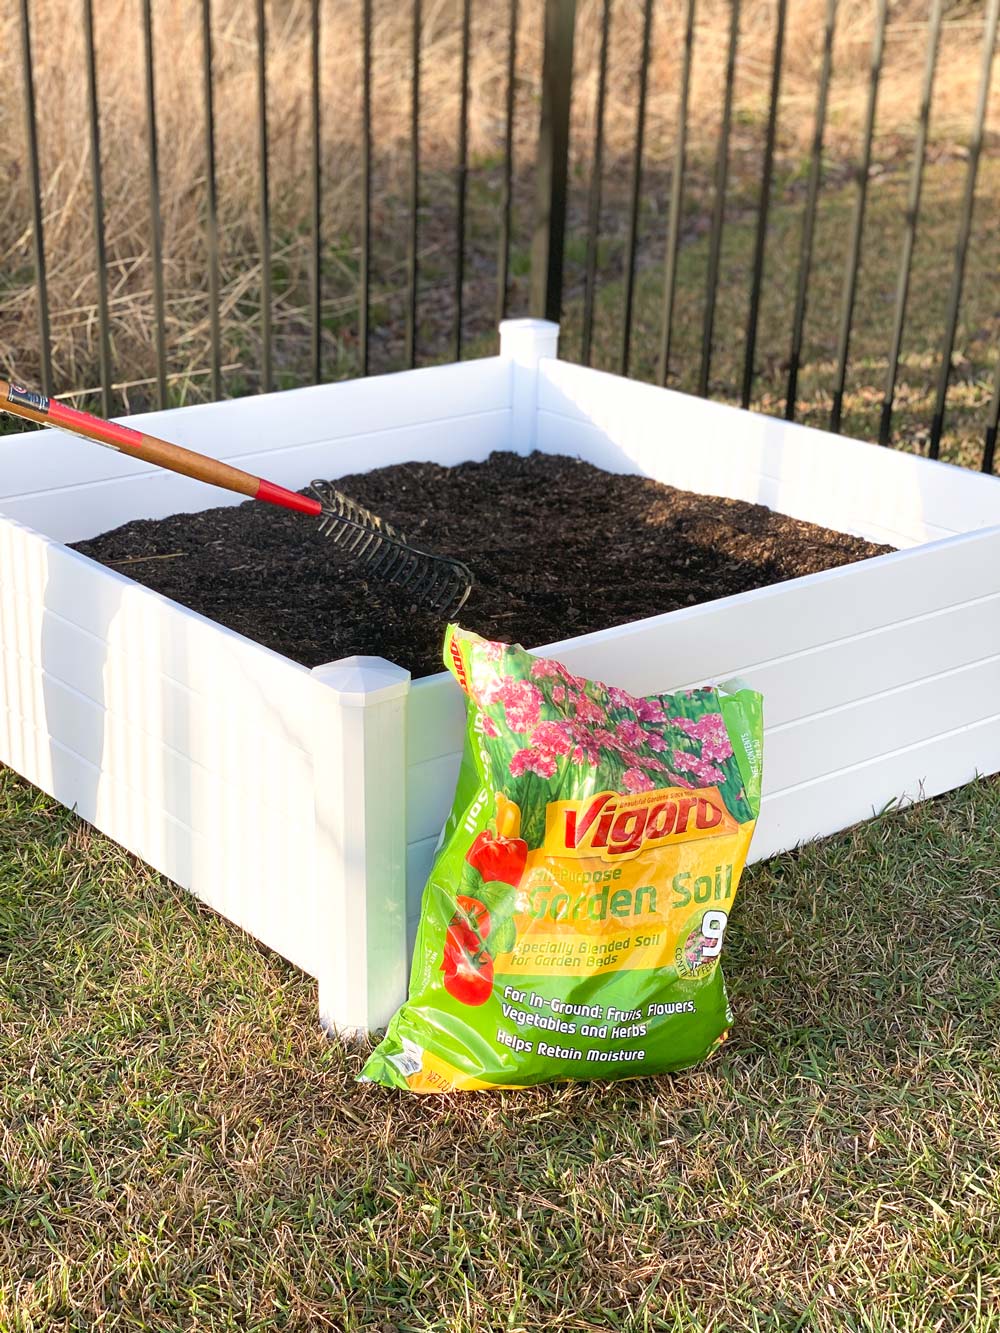 Raised garden bed with a bag of Vigoro garden soil.